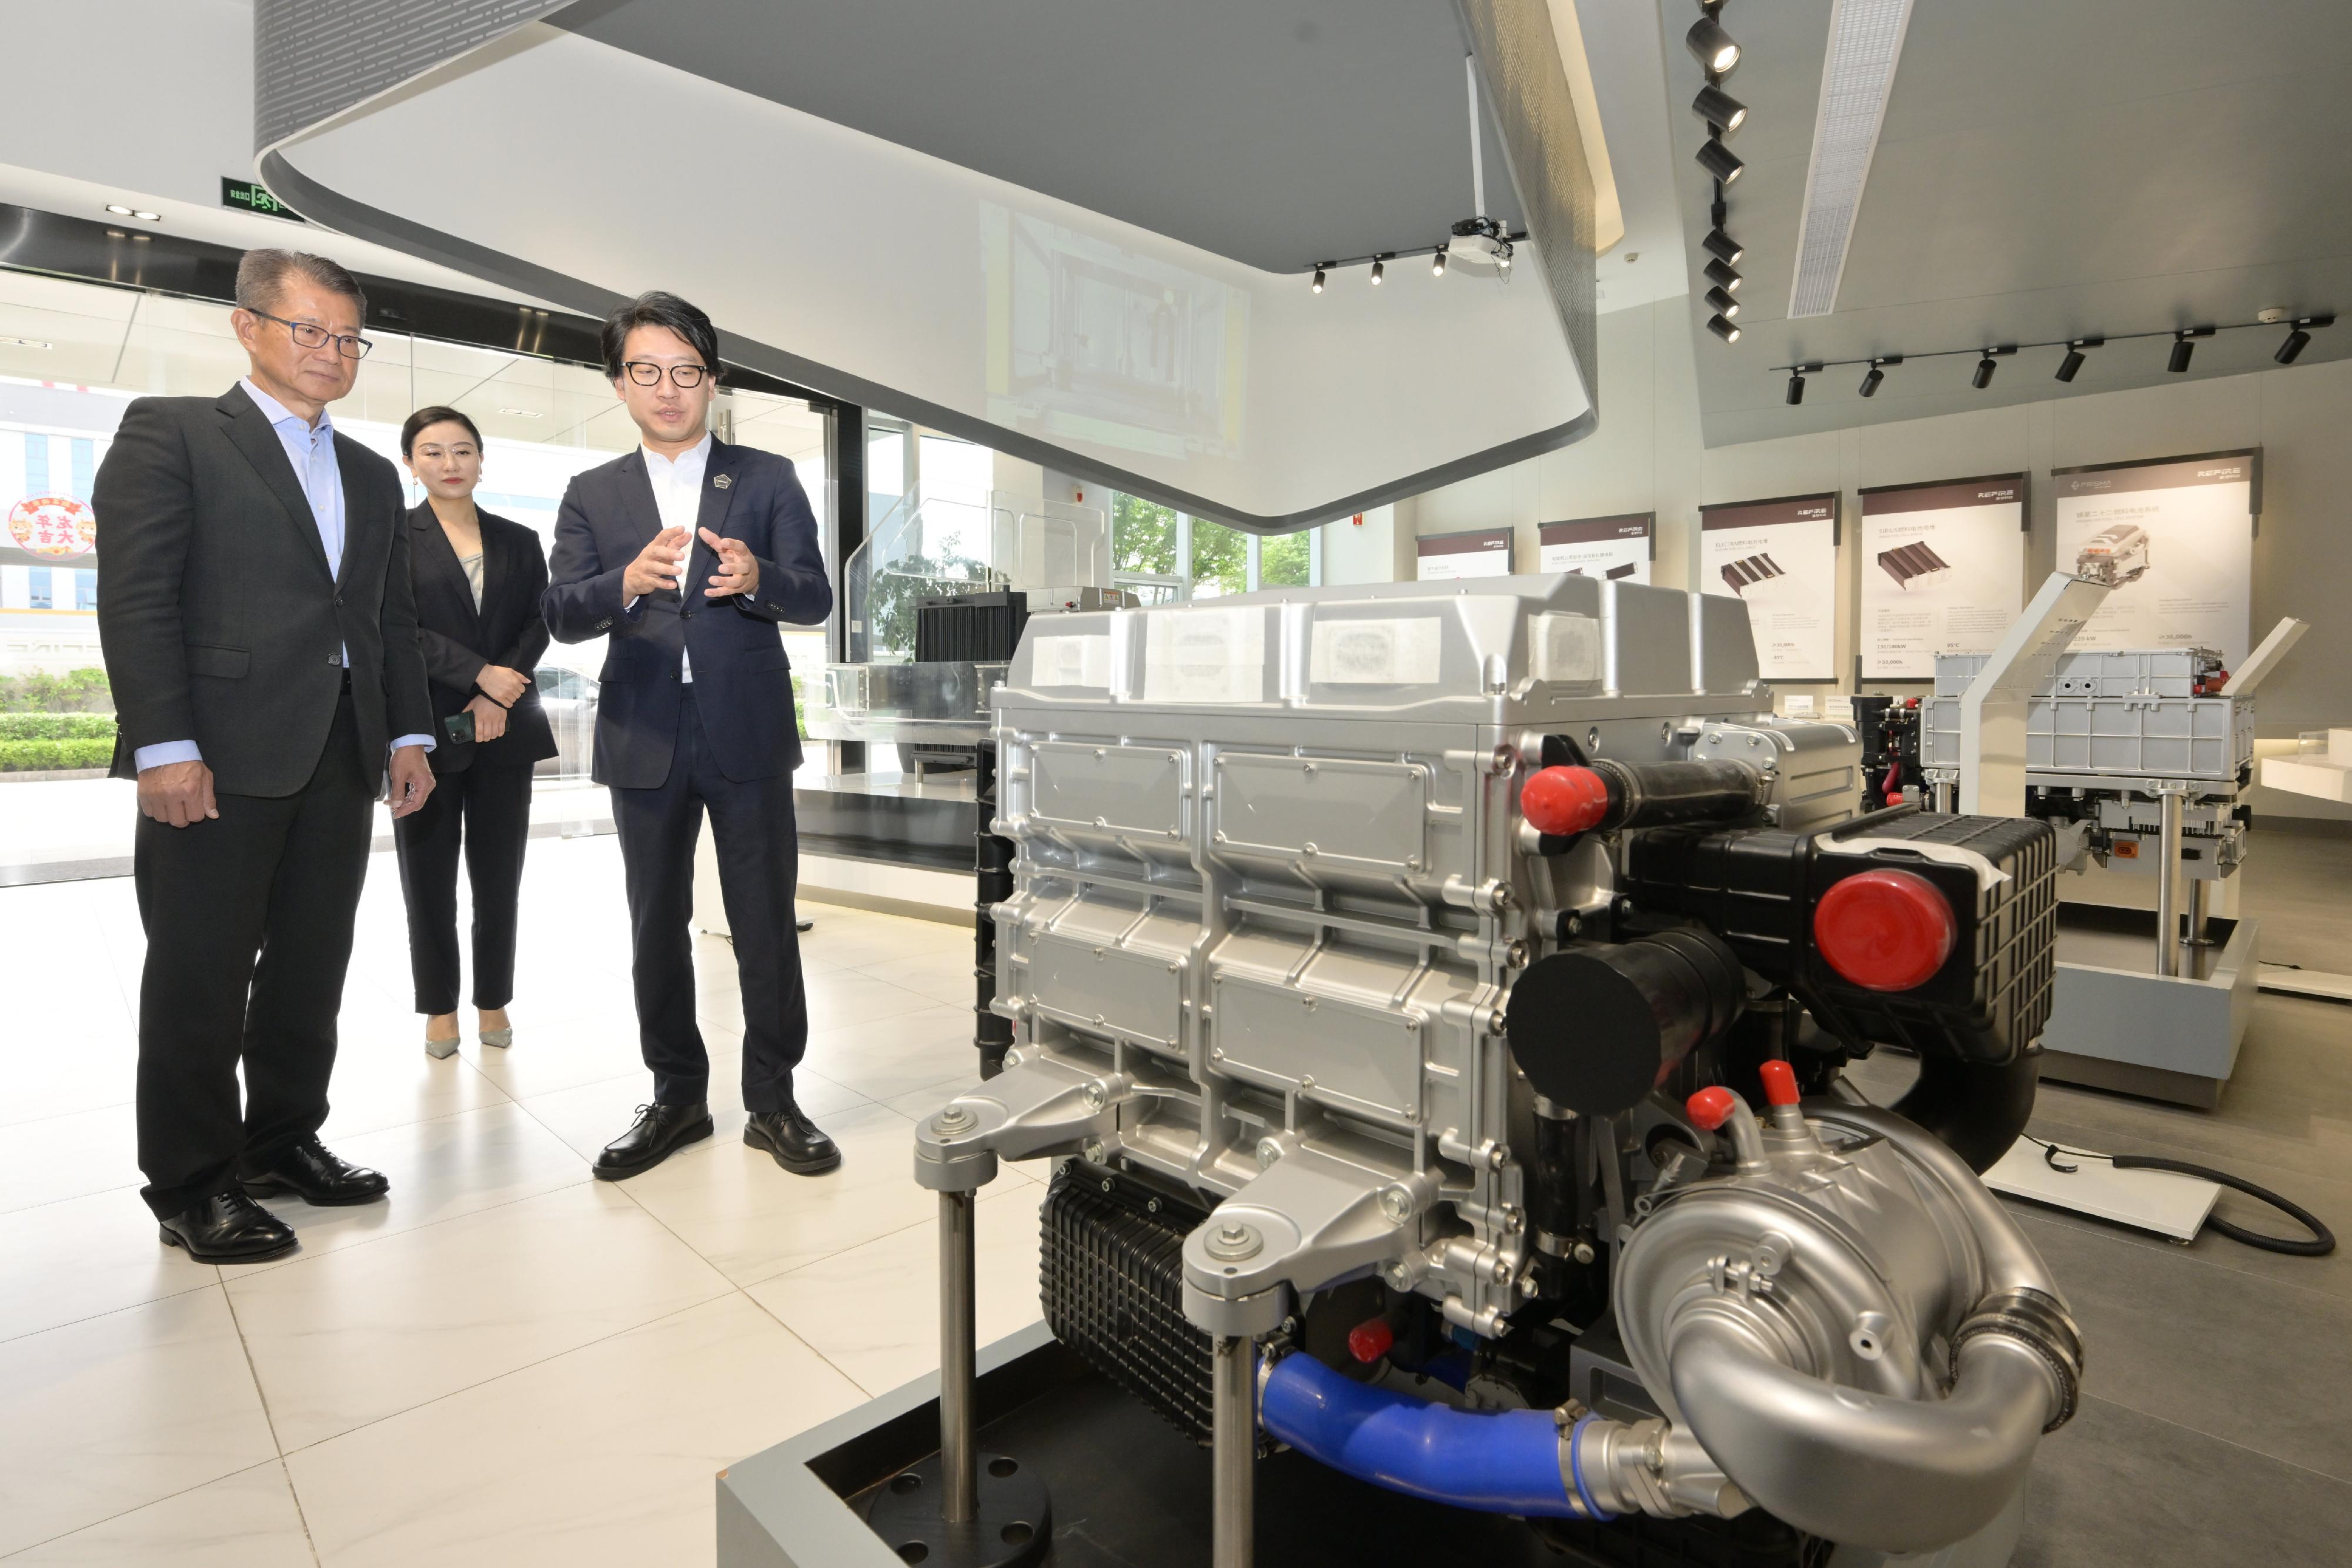 财政司司长陈茂波今日（四月十九日）结束访问苏州。图示陈茂波（左一）早上前往一家从事氢能科技的企业，并参观其燃料电池系统。